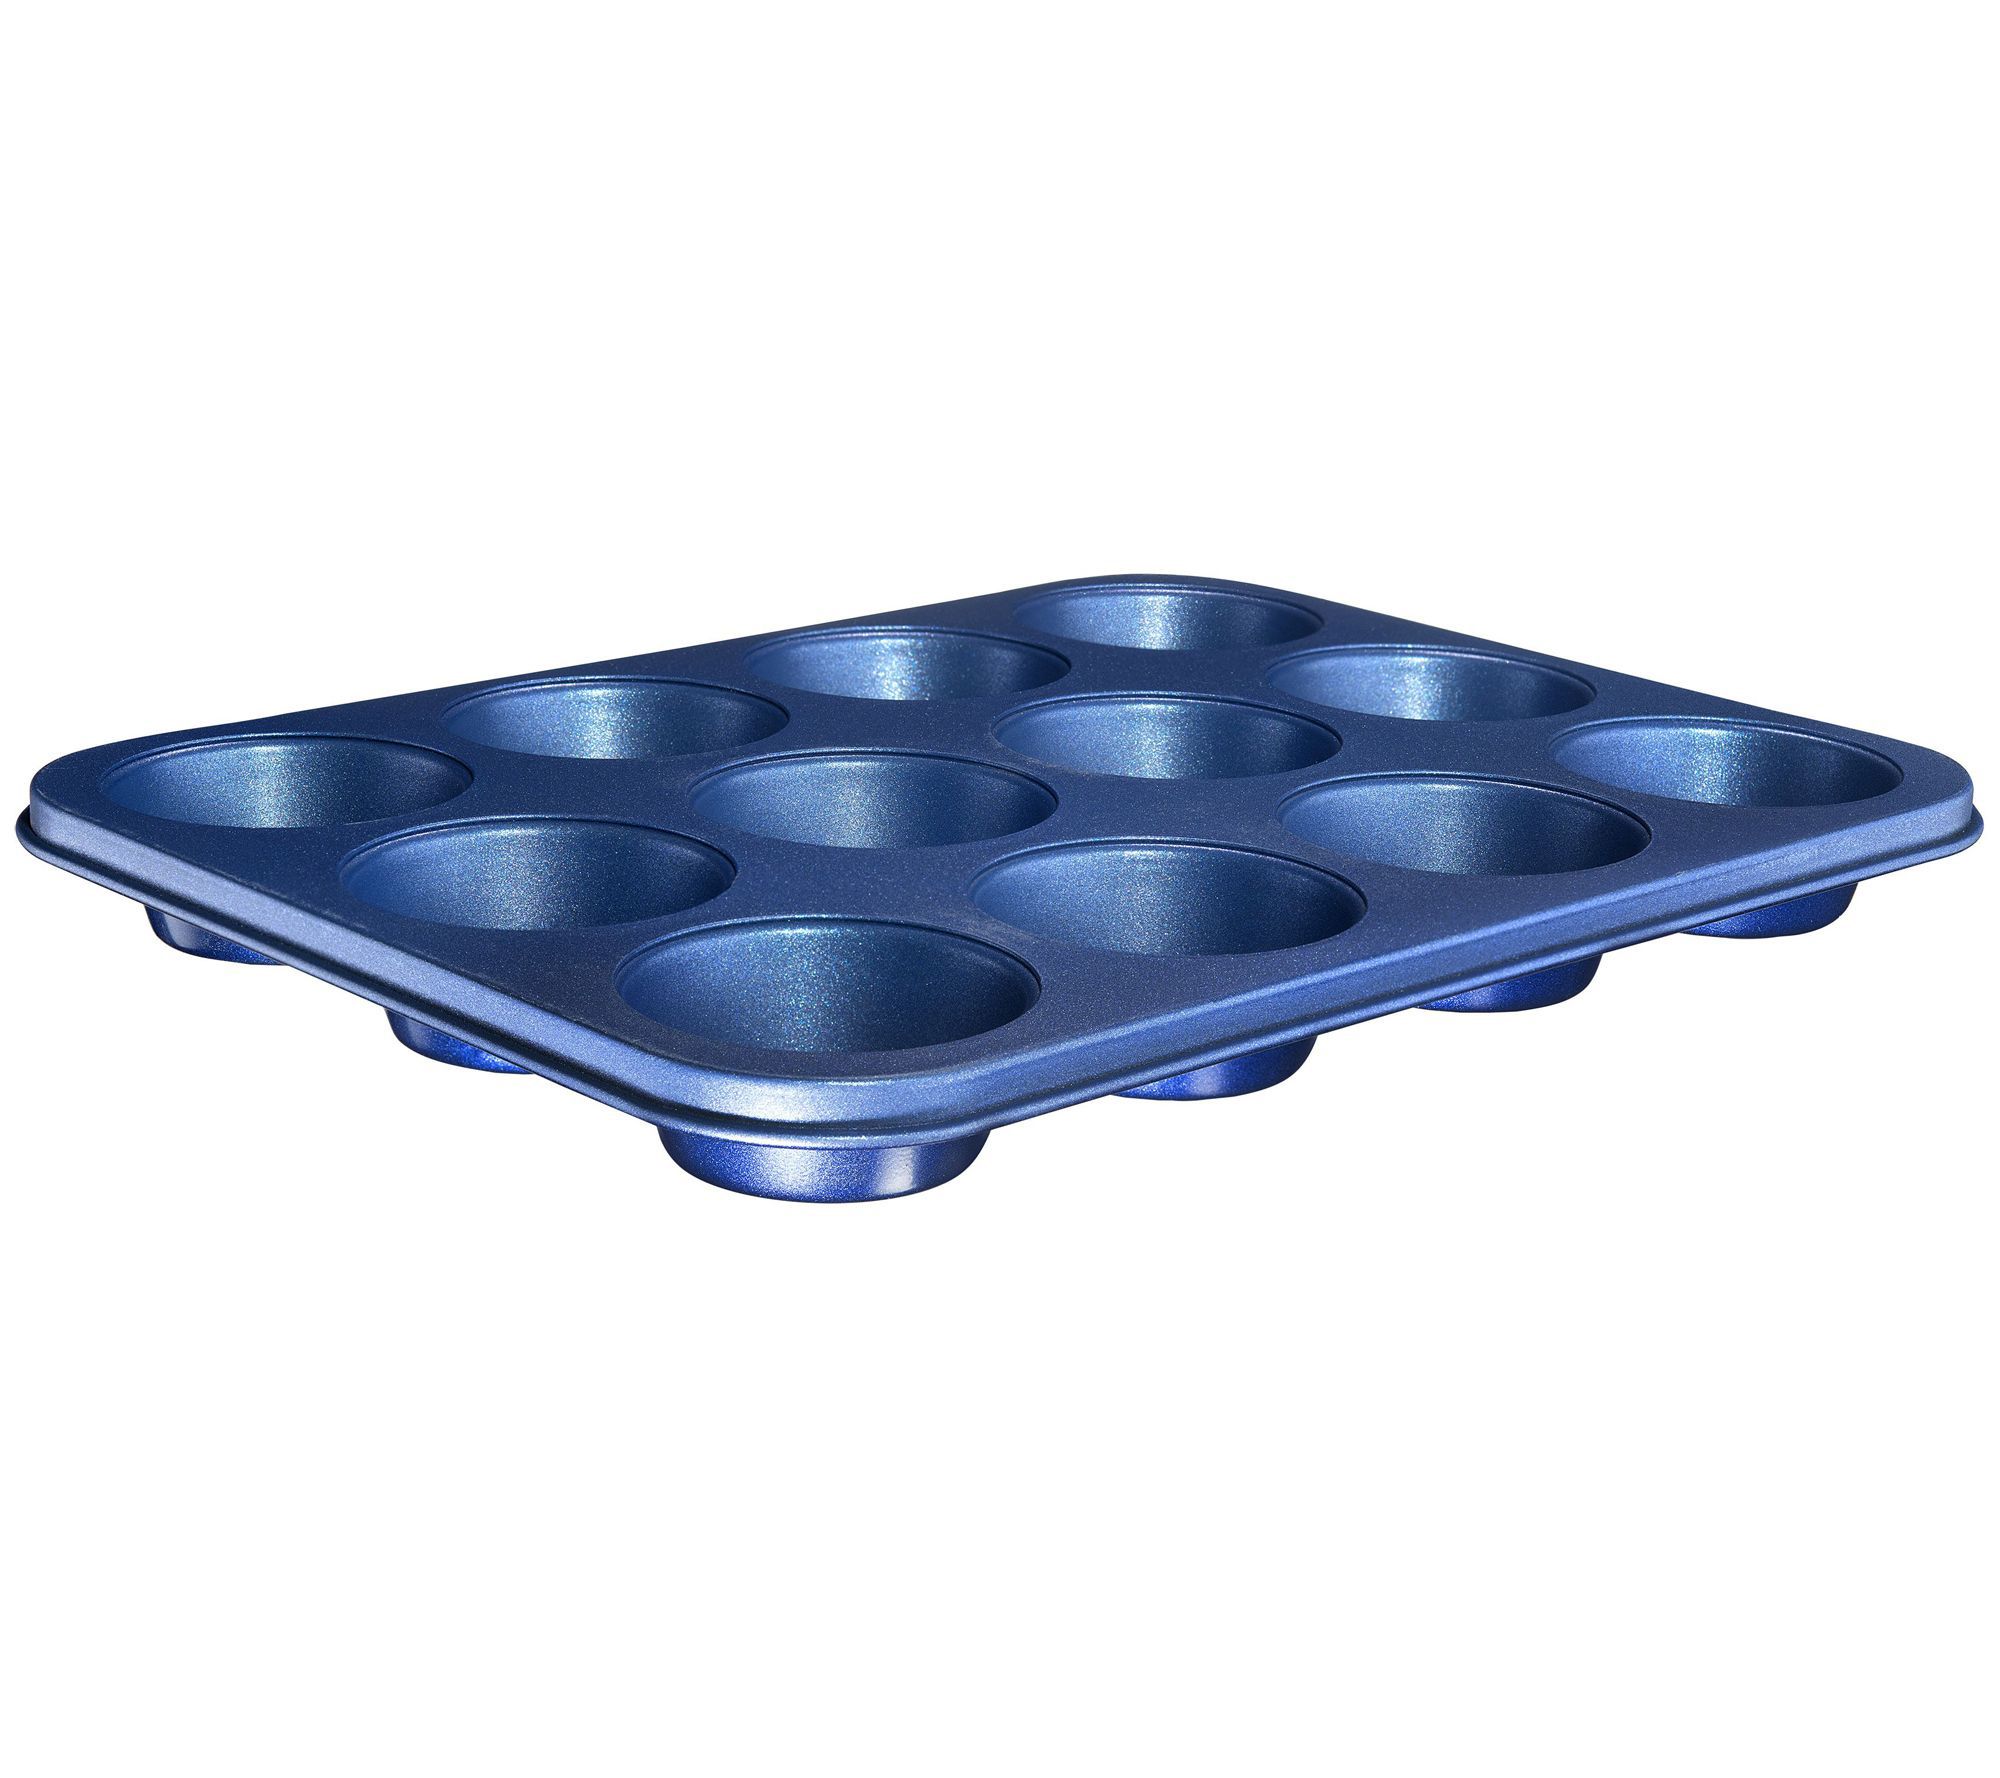 Granitestone Blue 12-Cup Non-Stick Muffin Pan 